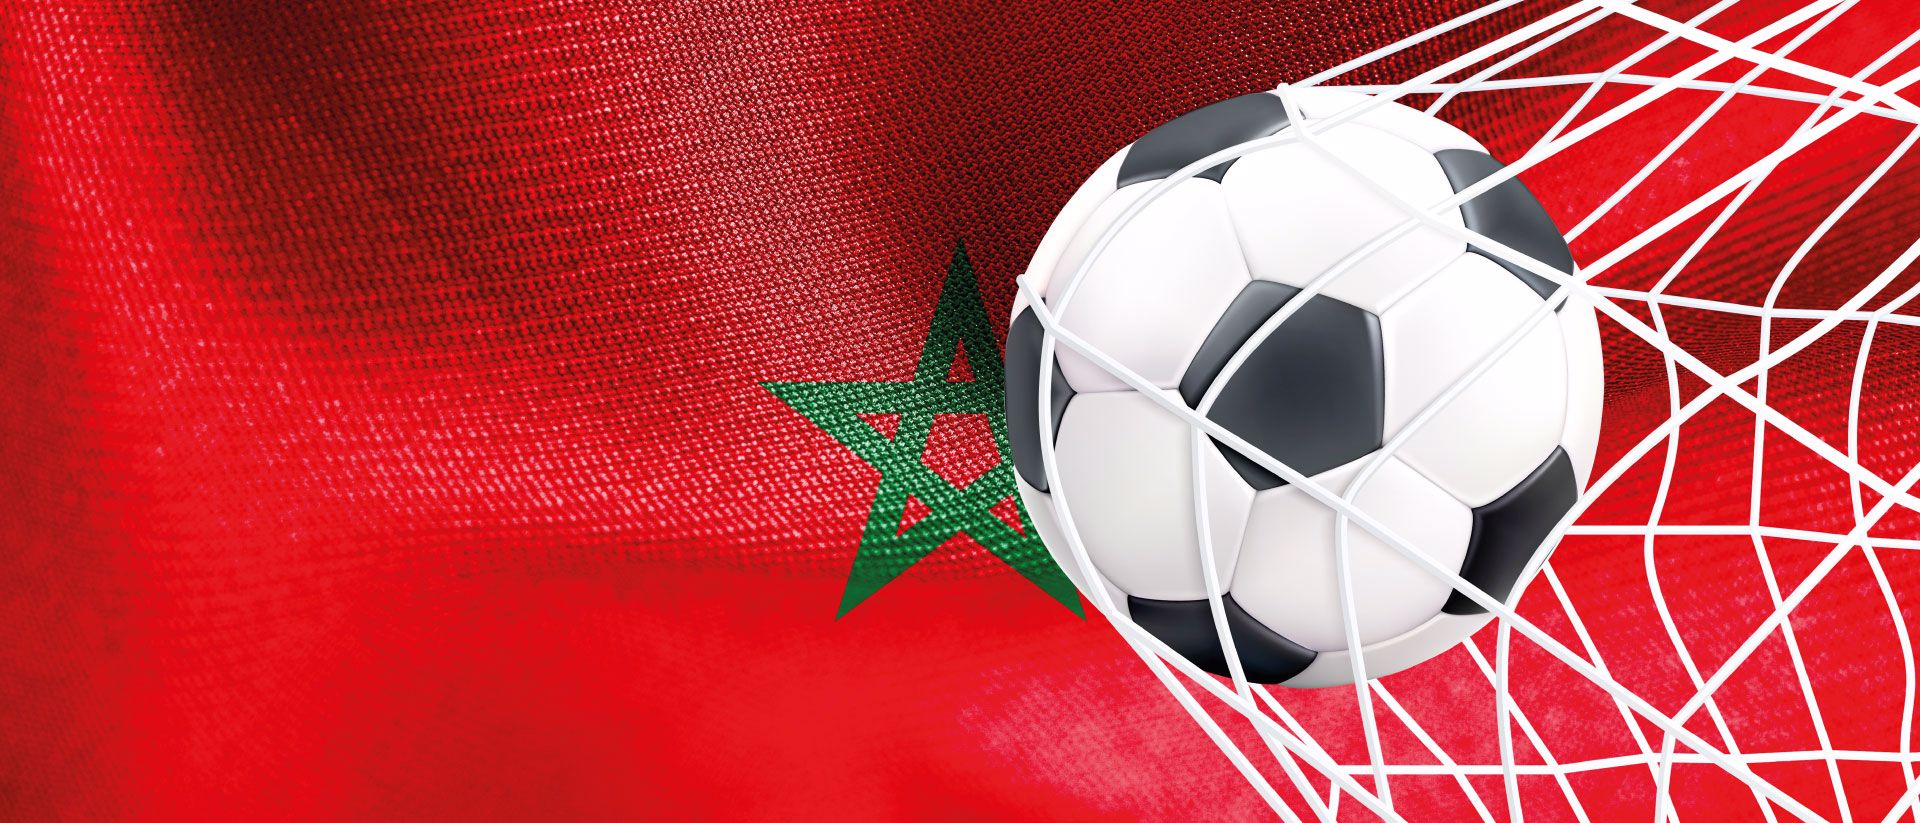 Bandeira de Marrocos e bola de futebol